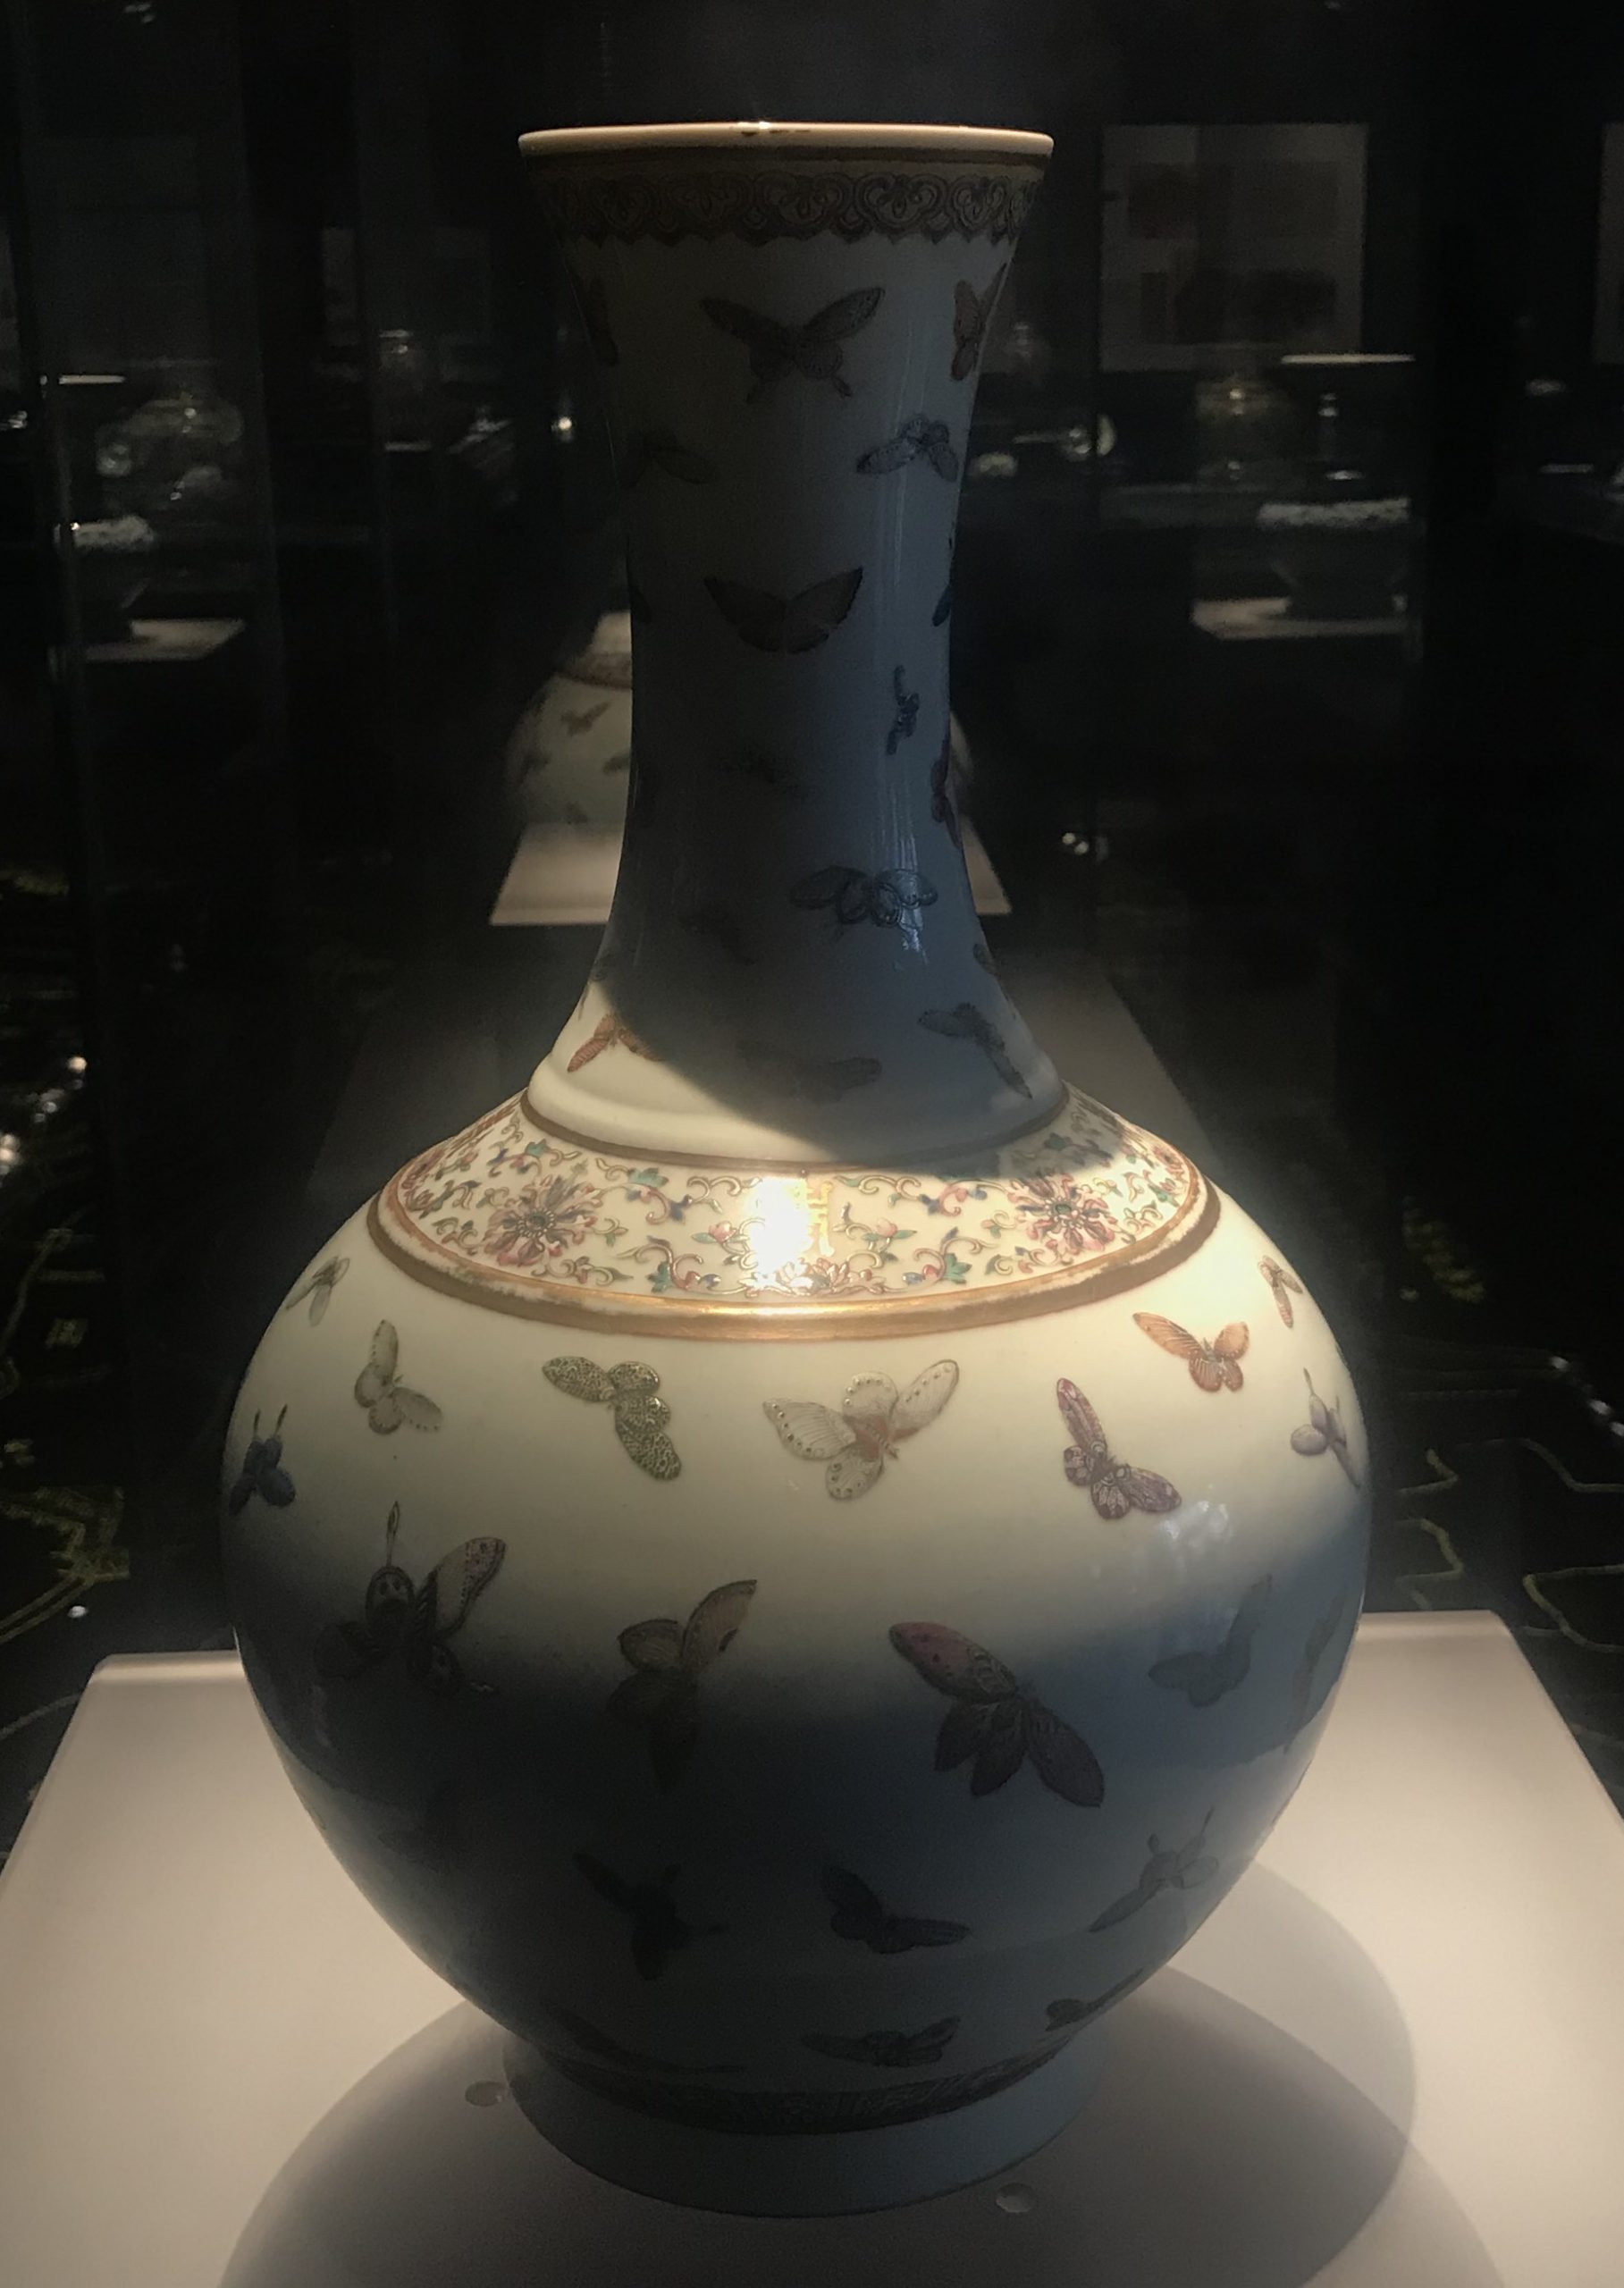 粉彩蝴蝶紋磁賞瓶-明清時代-常設展F３-成都博物館